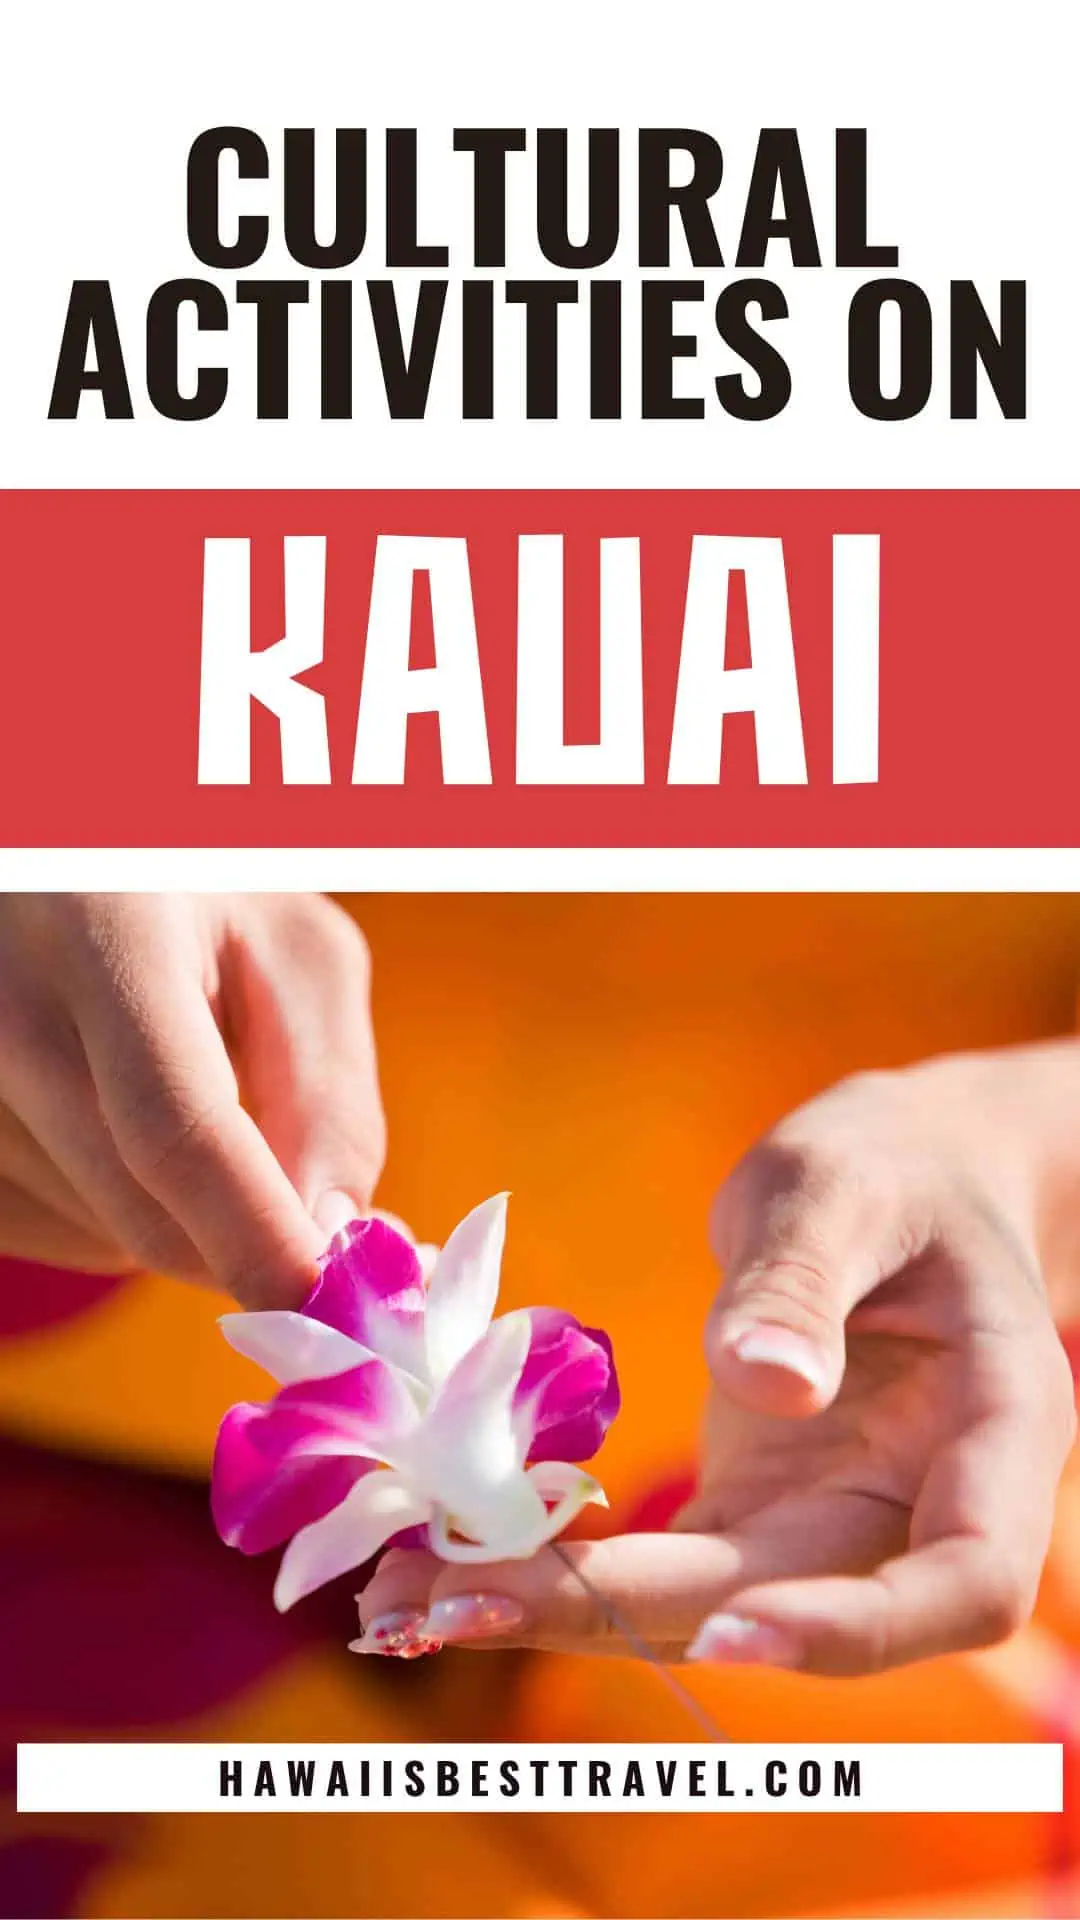 kauai cultural activities - pin